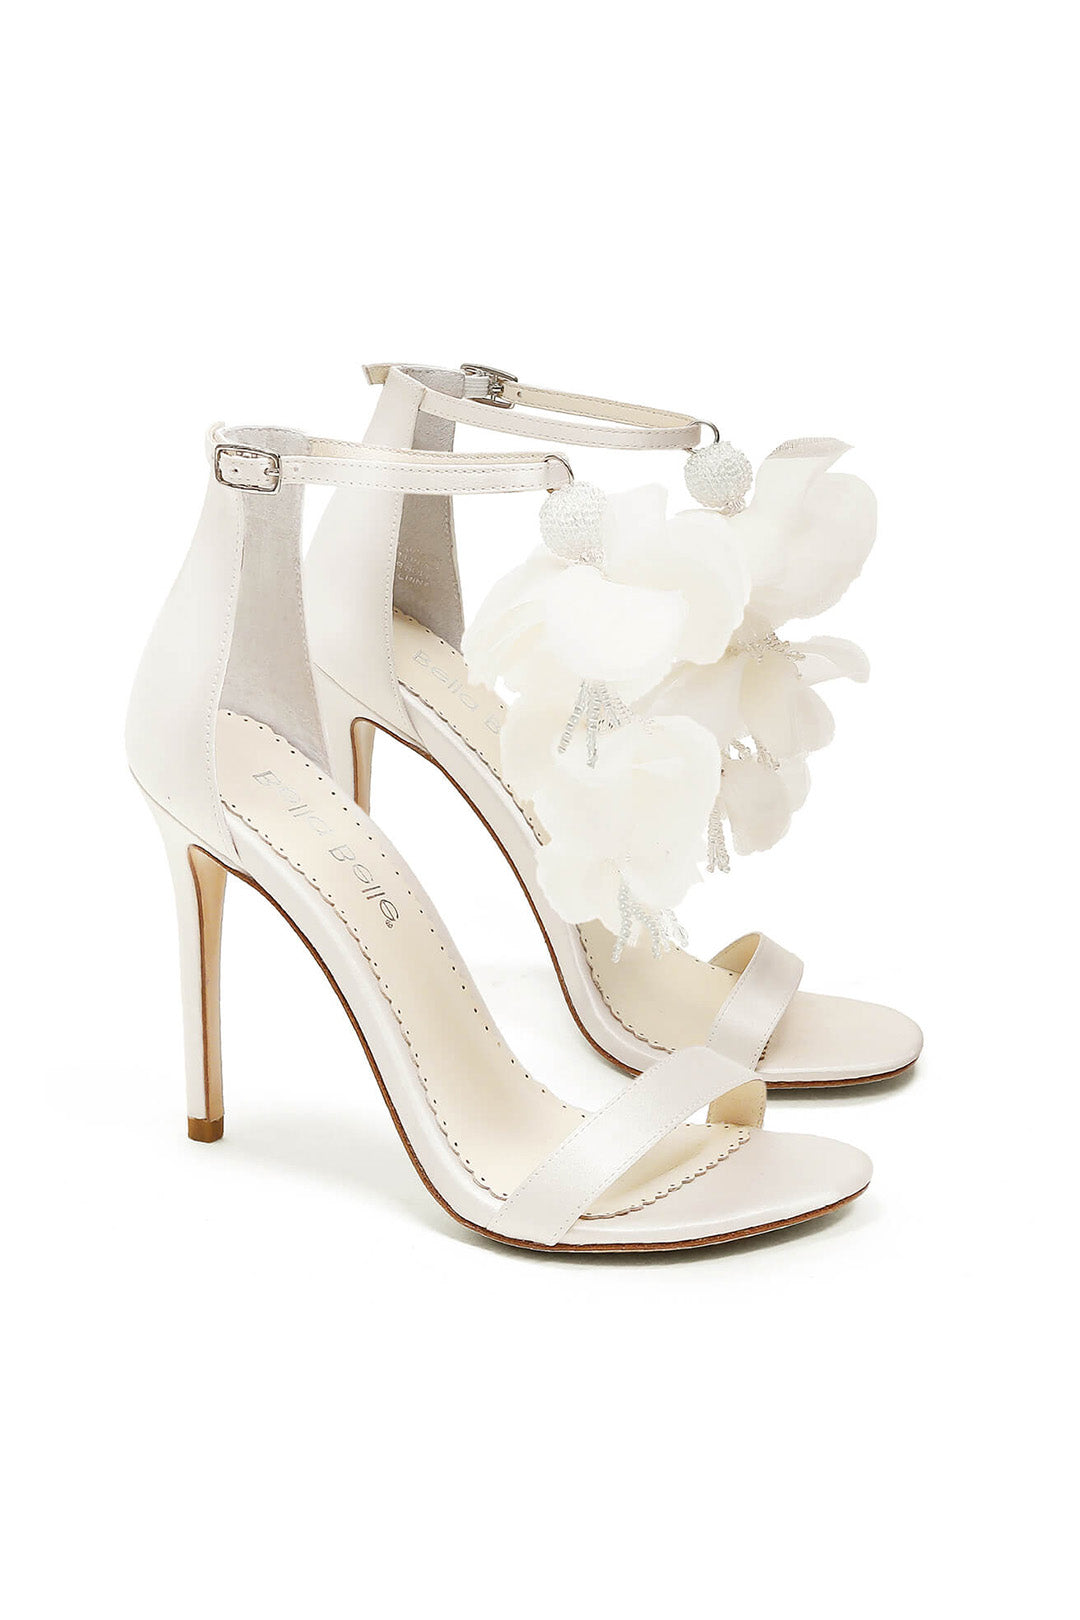 Braut Stilettos mit Chiffonblüten – Wisteria